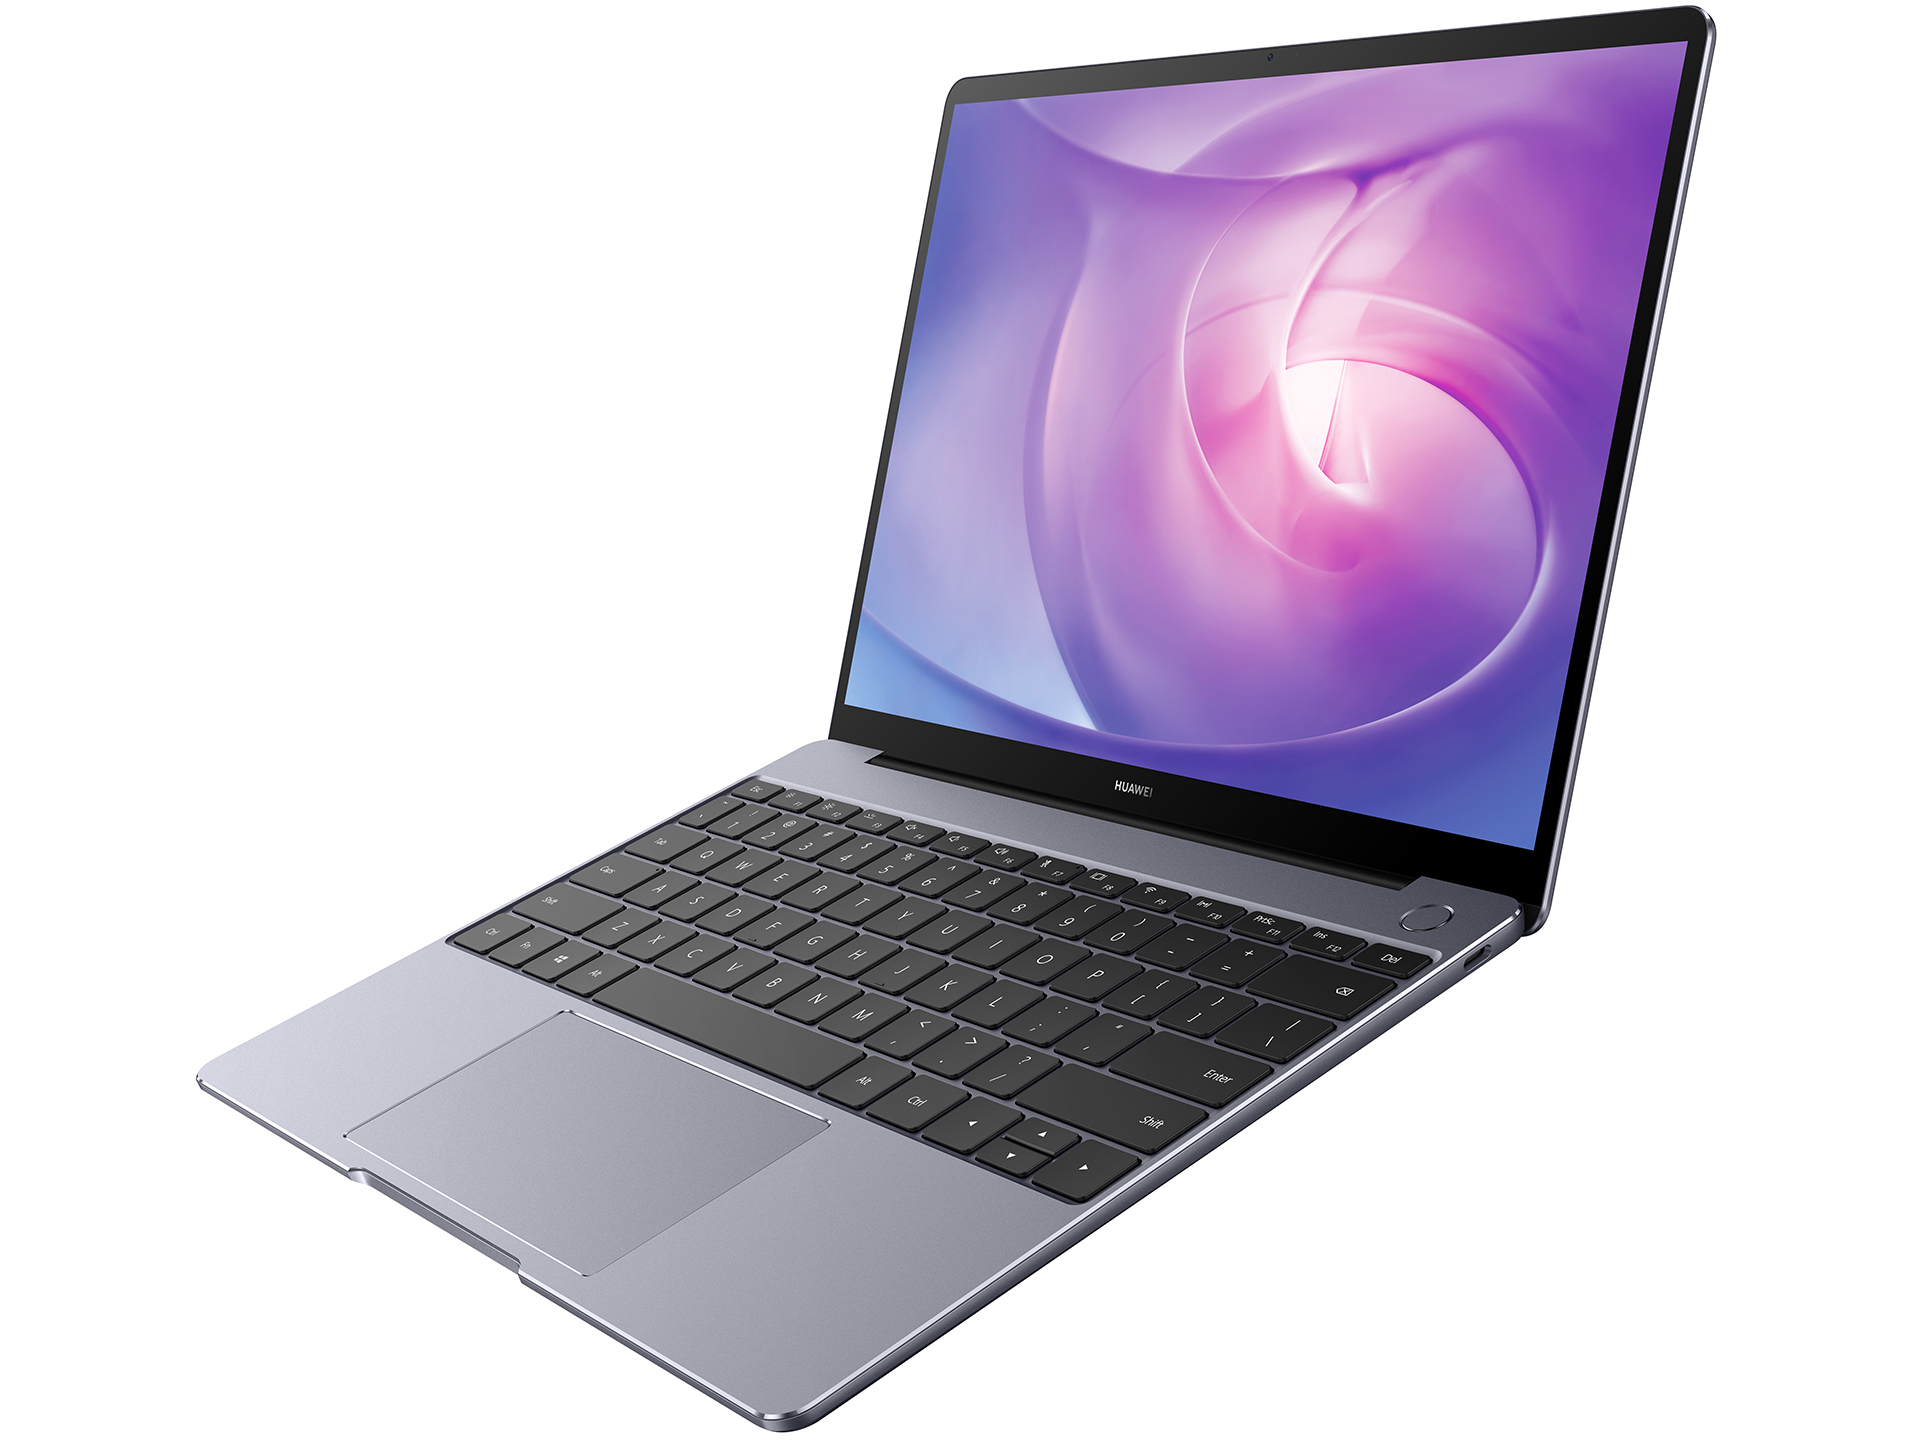 Huawei MateBook 13 2020 AMD - Notebookcheck.net External Reviews